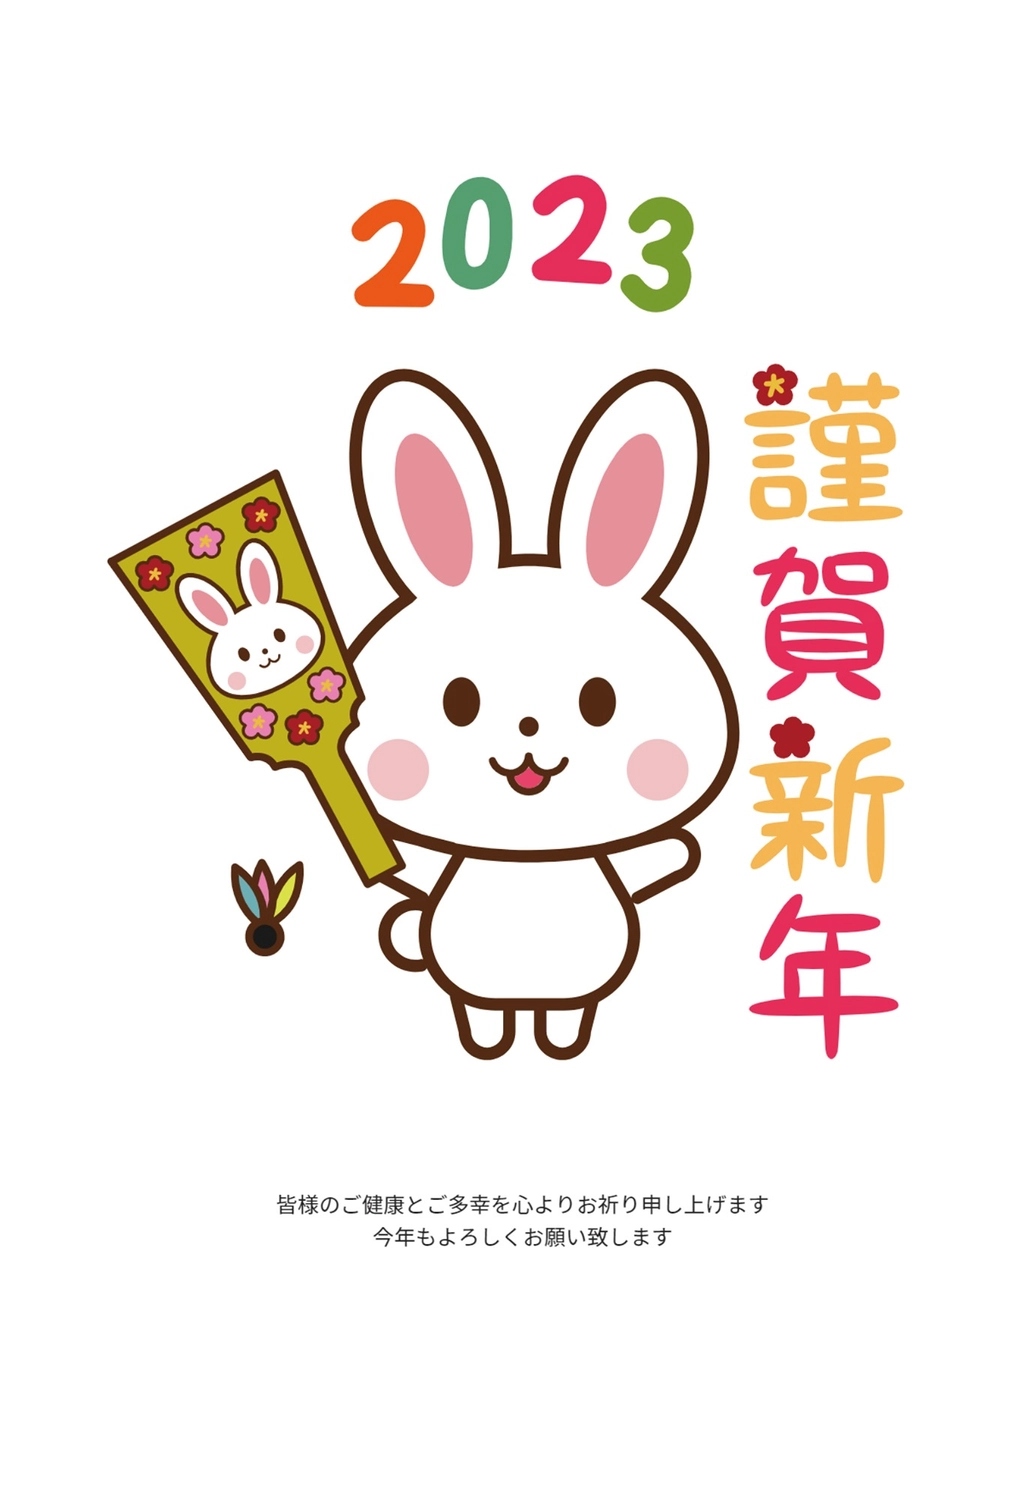 羽子板を持つうさぎ年賀状, animal, concord, White rabbit, New Year Card template